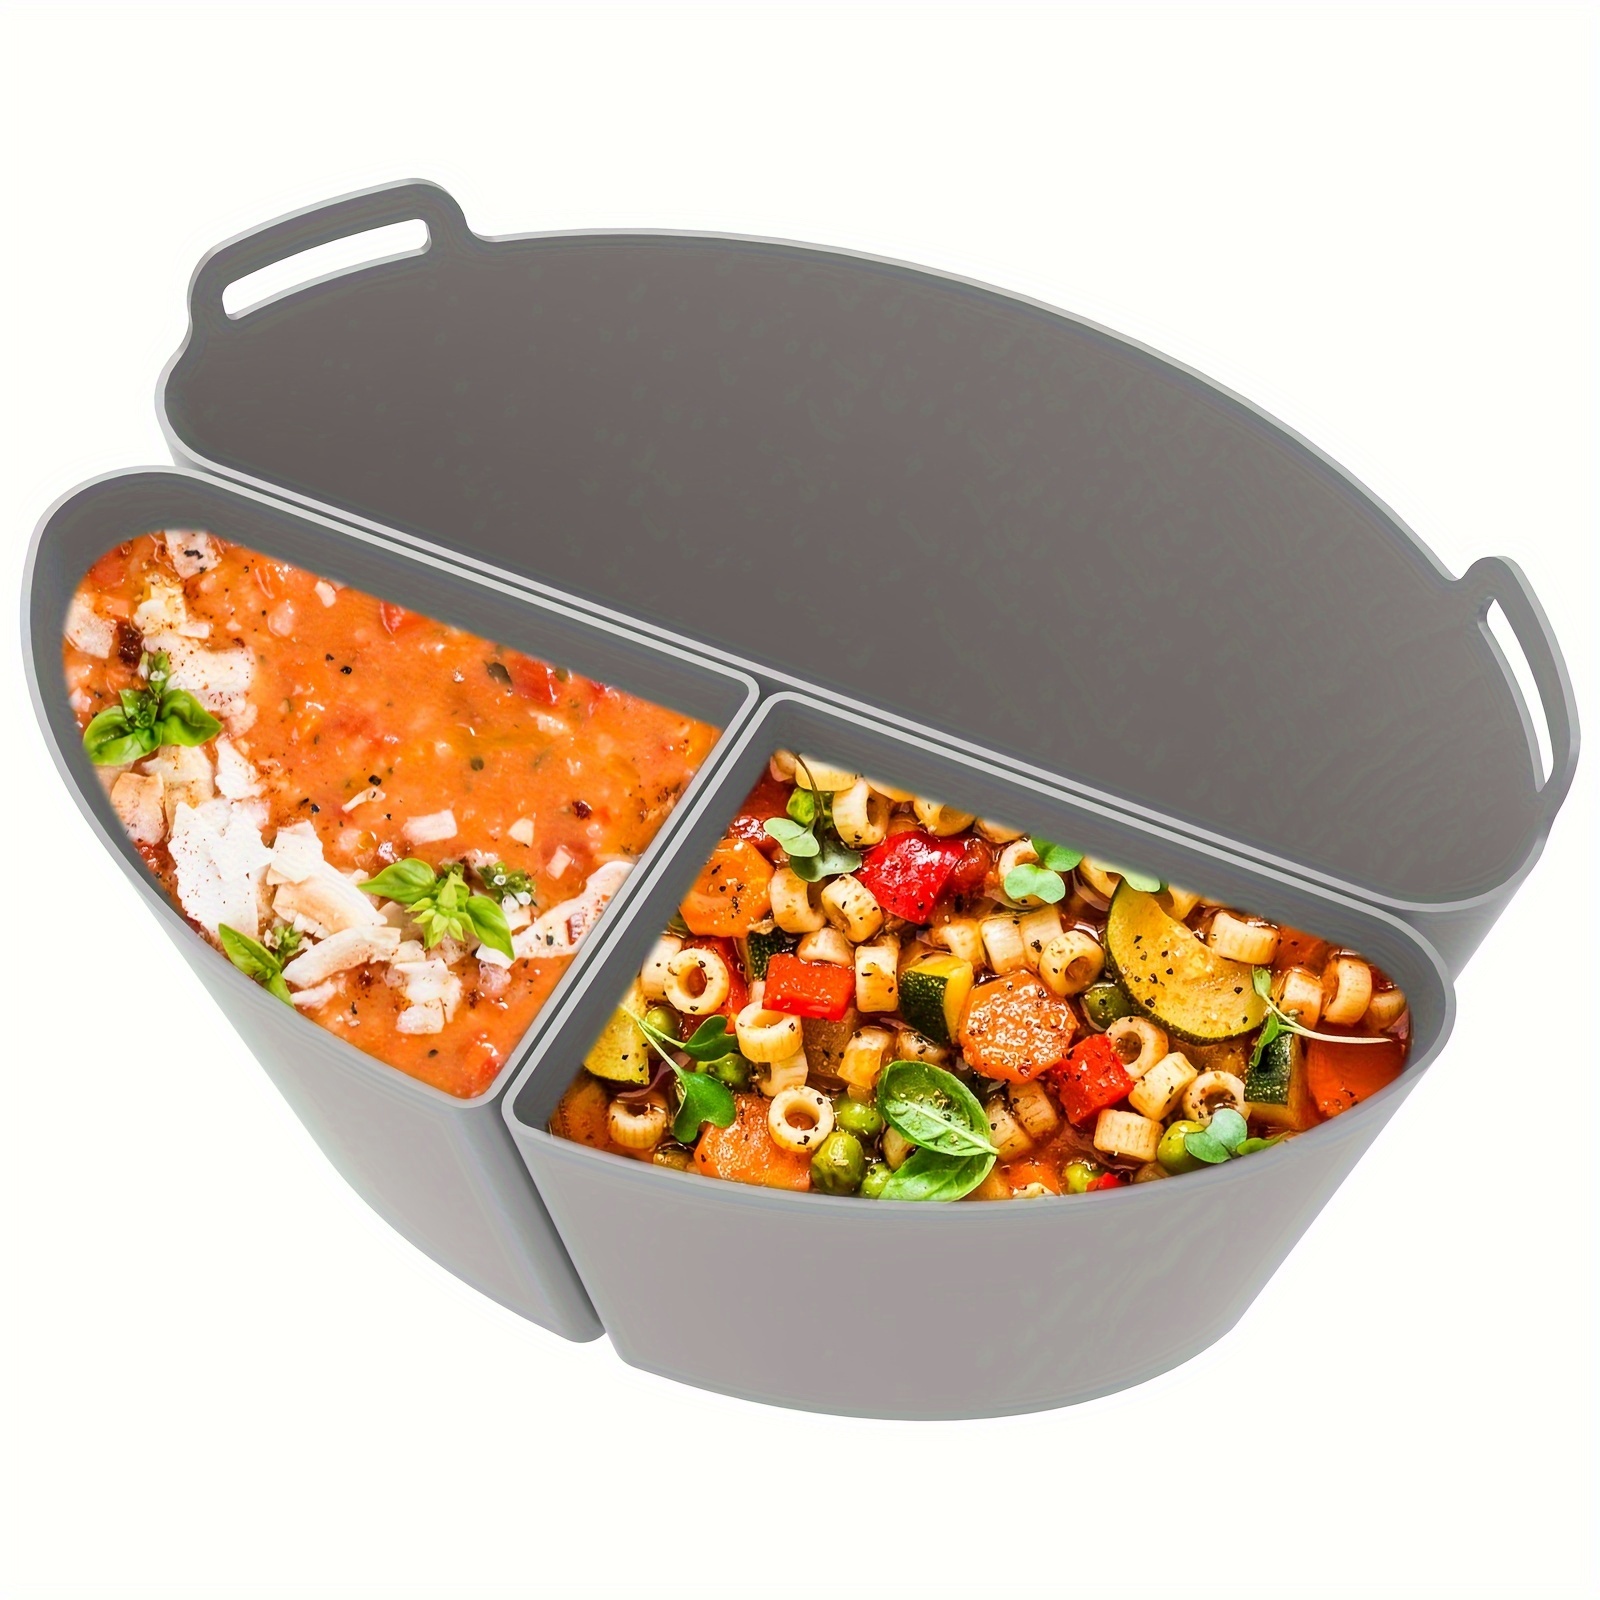 Reusable Silicone Crockpot Divider For 6 Quart Pot - Leakproof And  Dishwasher Safe Cooking Liner